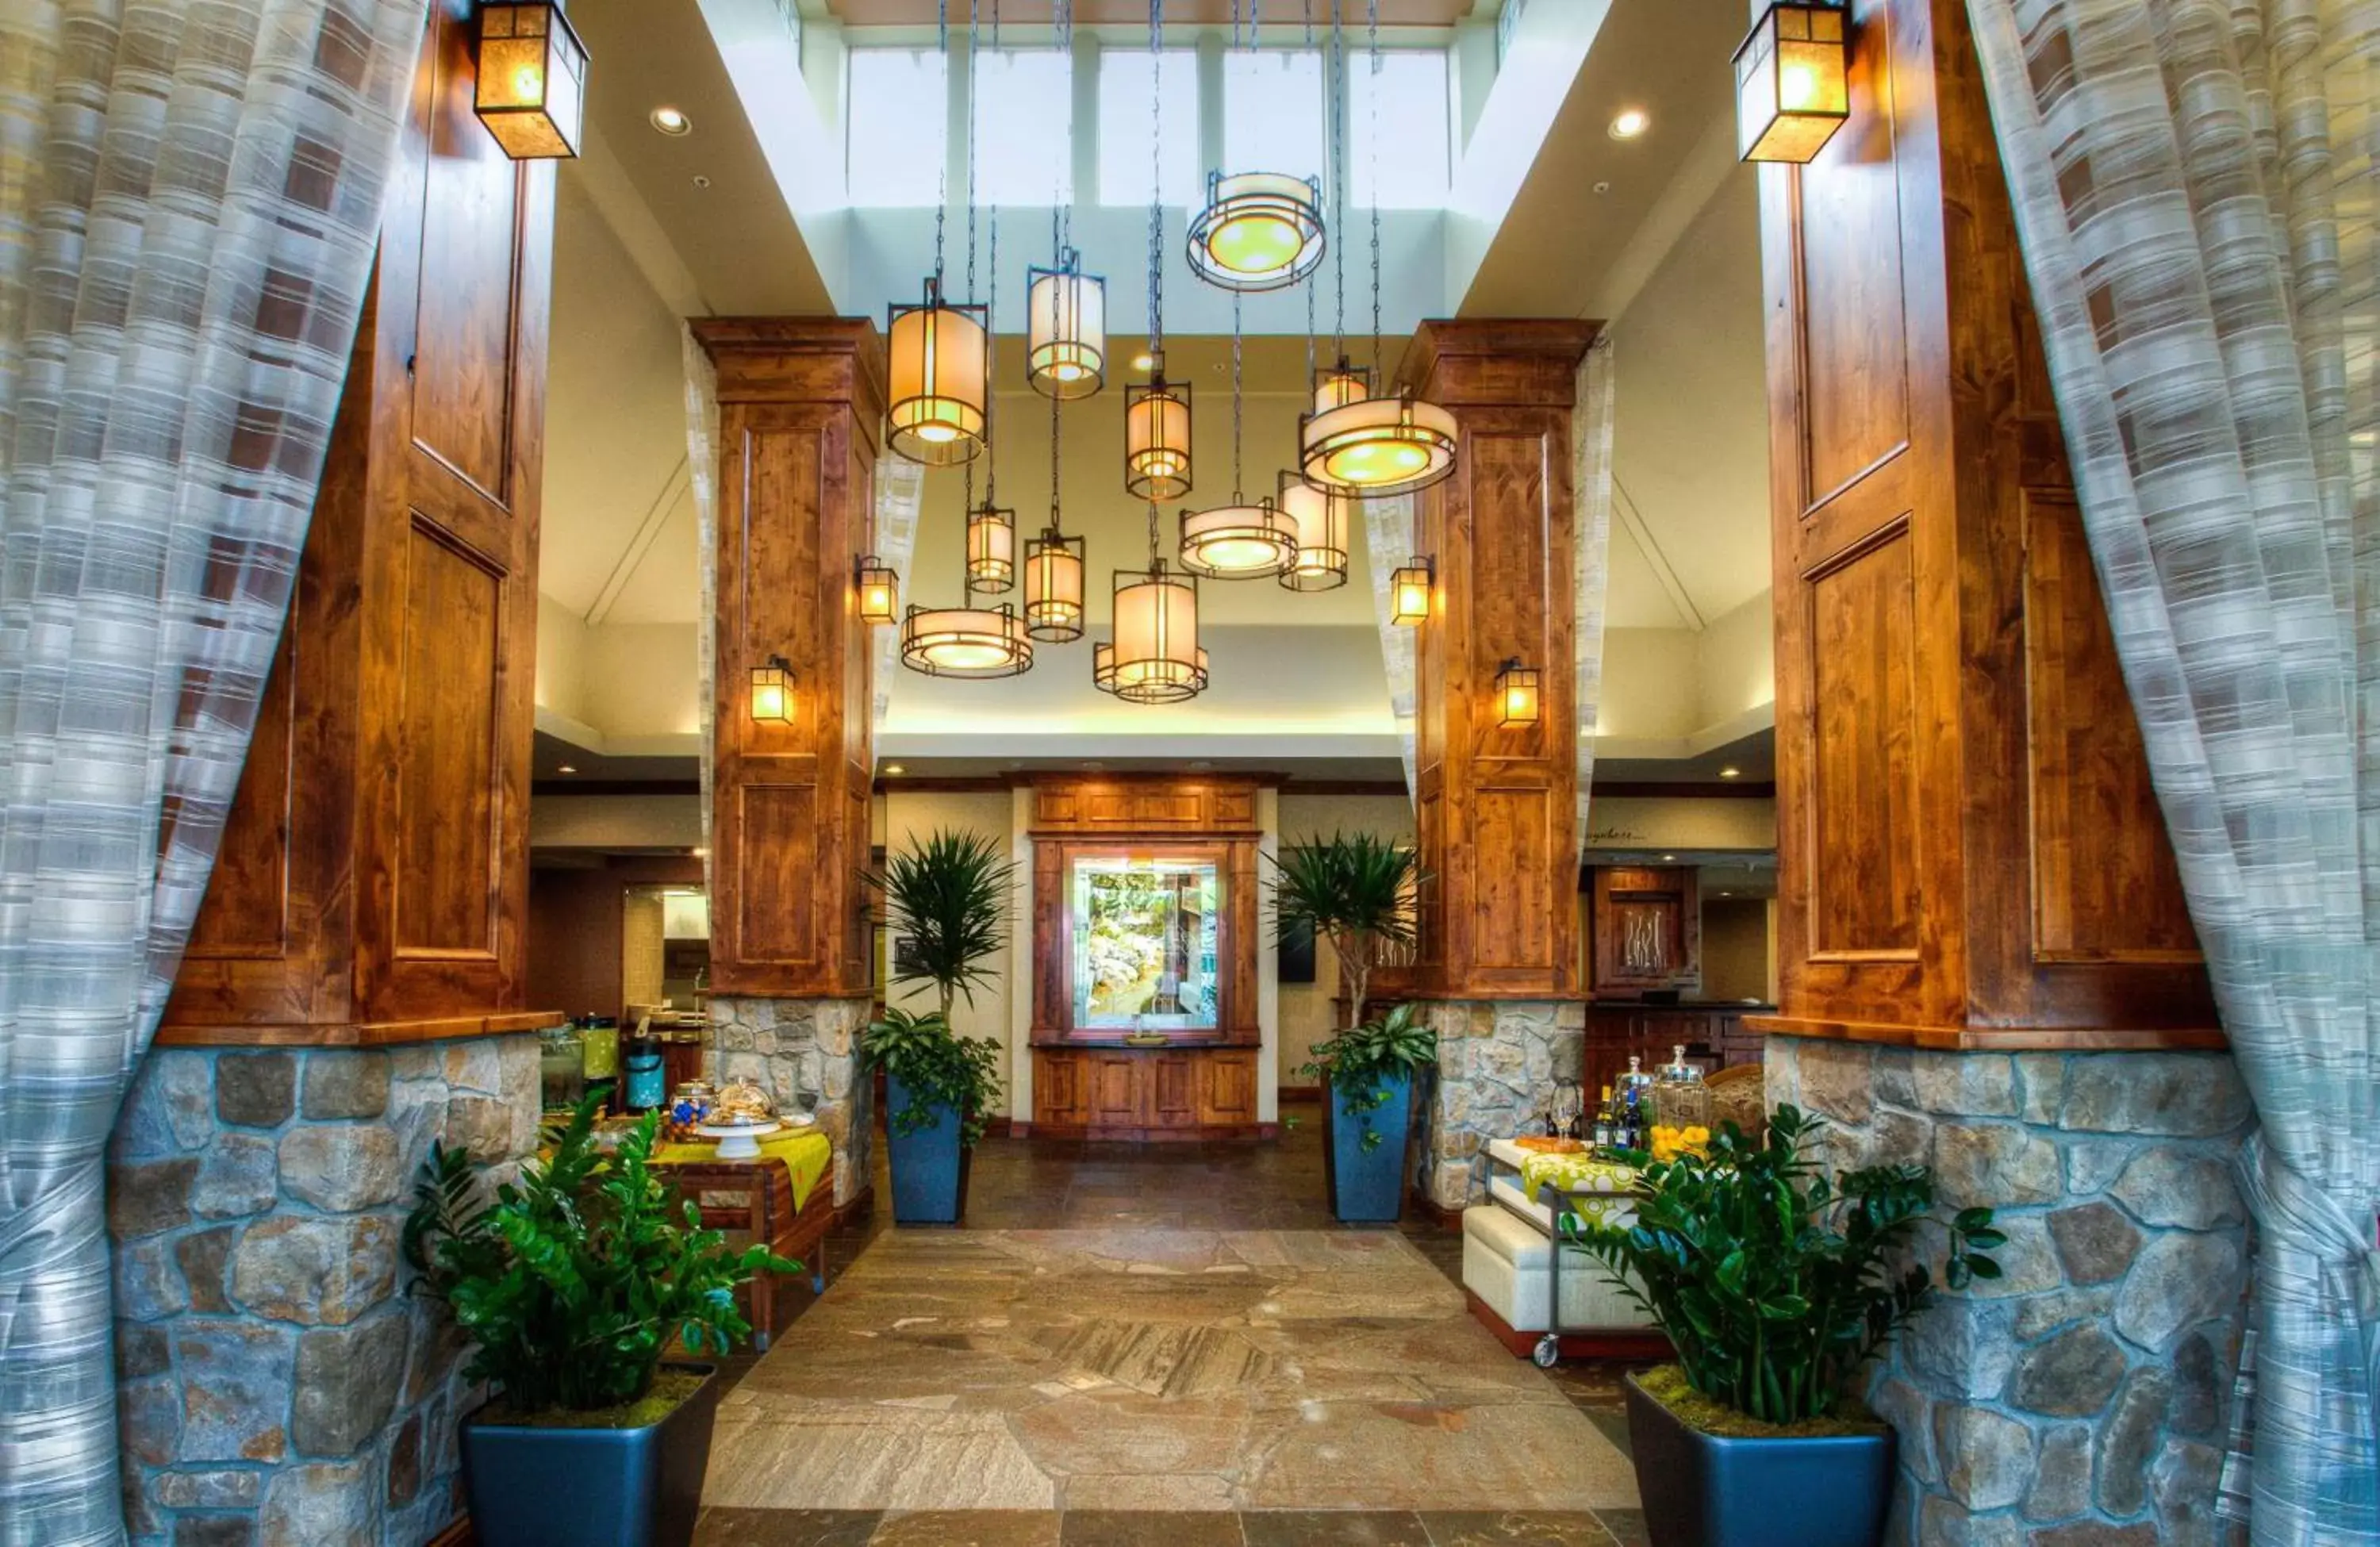 Lobby or reception, Lobby/Reception in Hilton Garden Inn Boise / Eagle